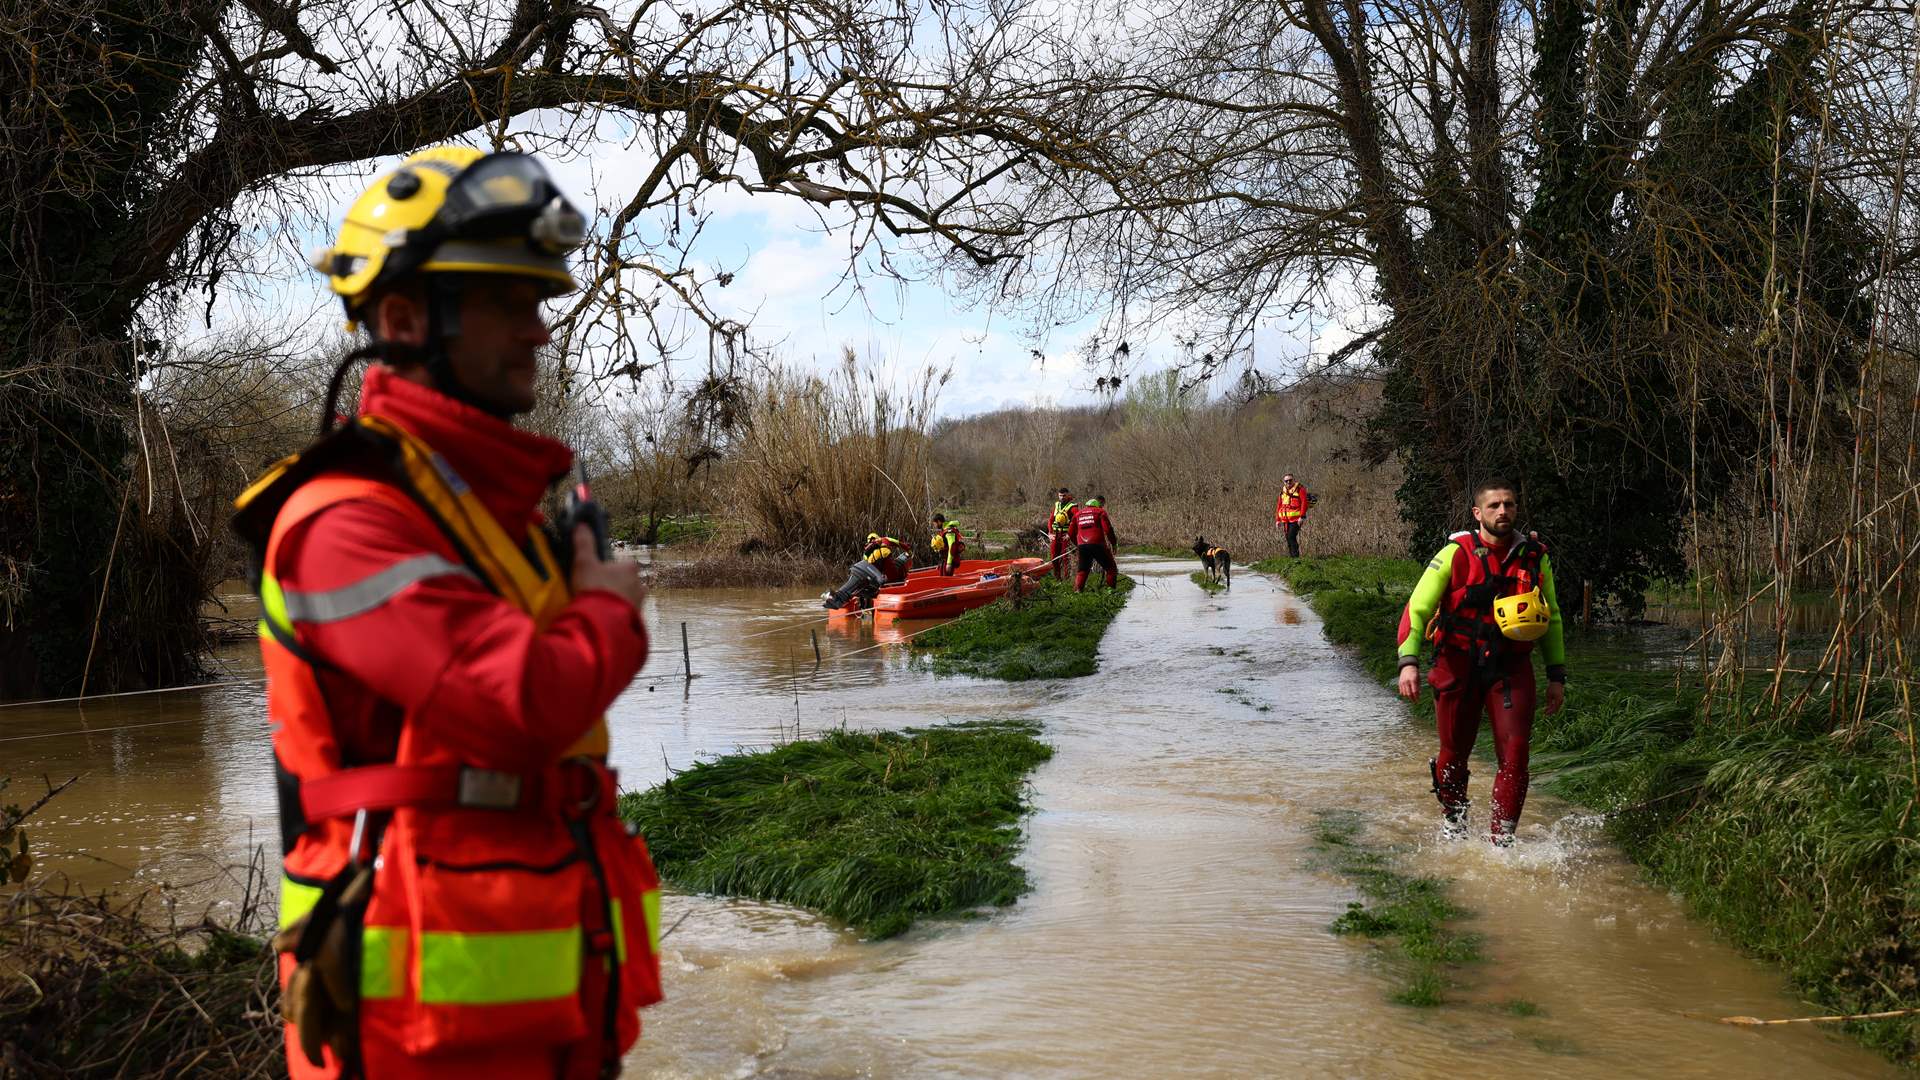 ثلاثة قتلى وأربعة مفقودين بسبب الأمطار الغزيرة في جنوب شرق فرنسا